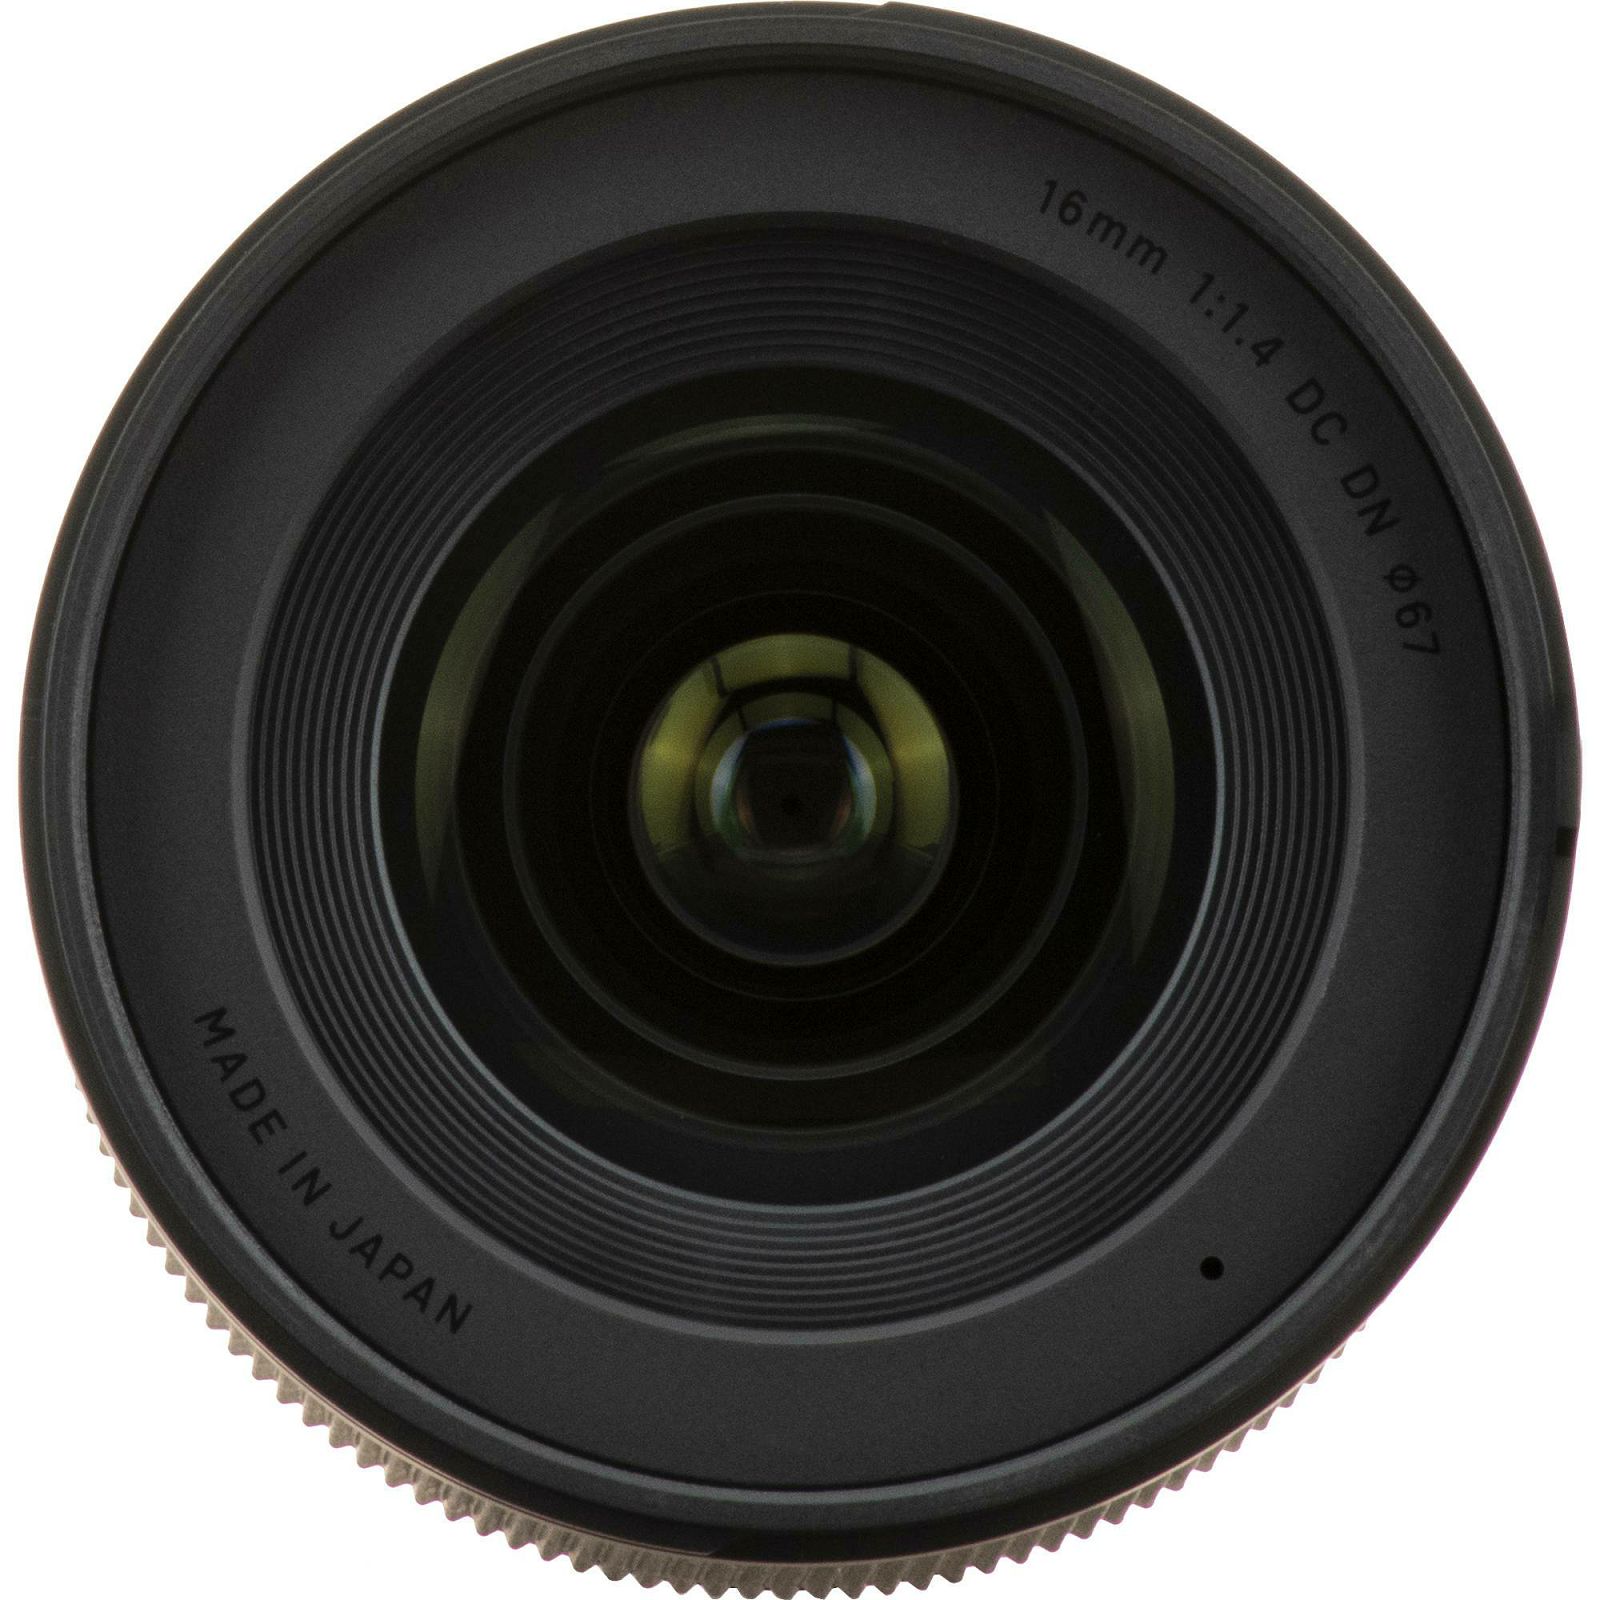 Sigma 16mm f/1.4 DC DN Contemporary objektiv za Canon EF-M